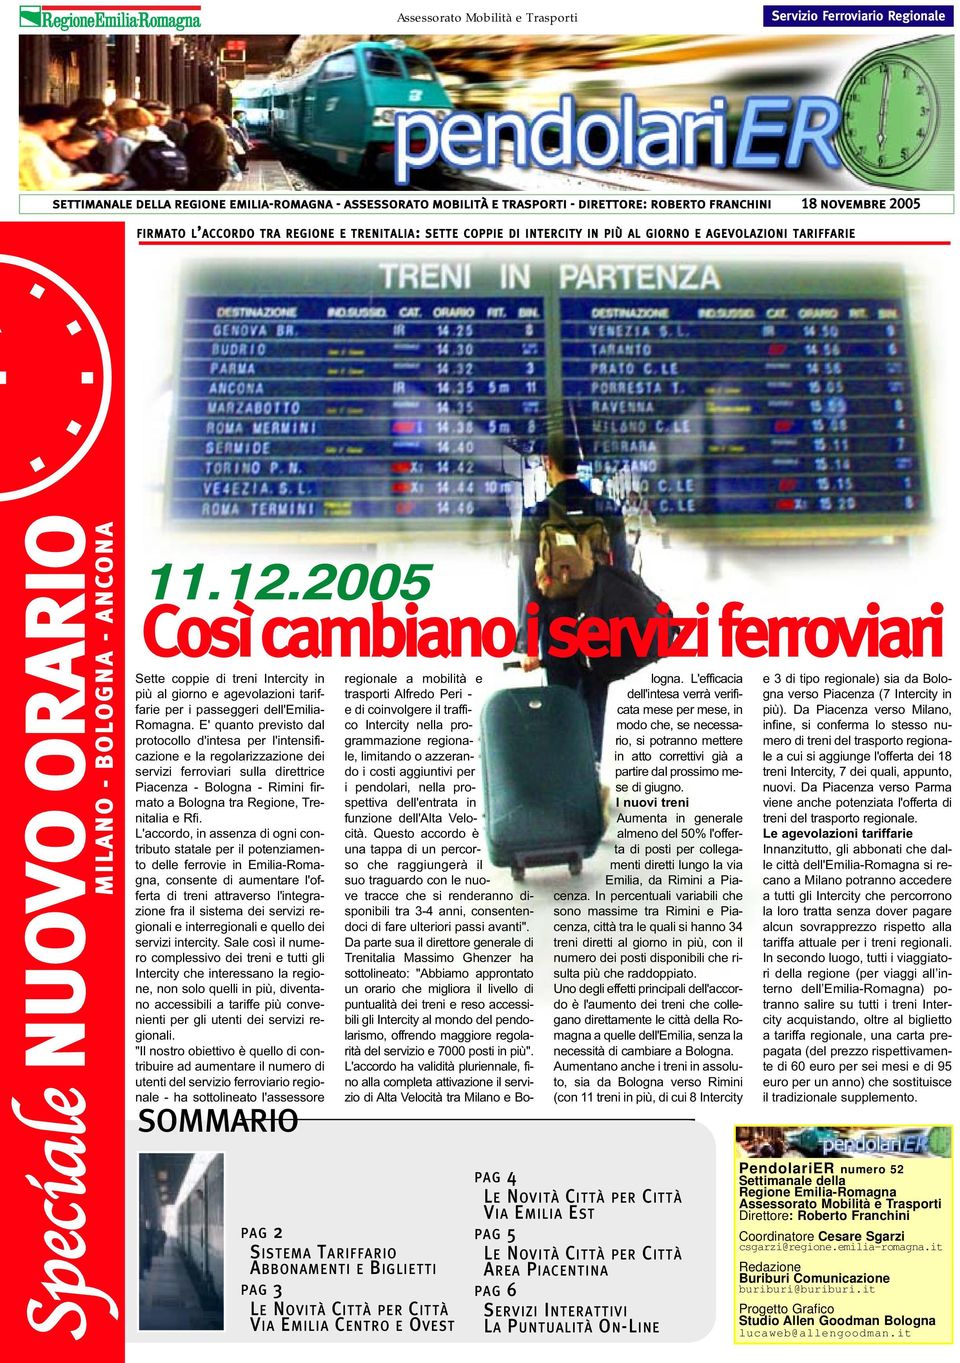 2005 Così cambiano i servizi ferroviari Sette coppie di treni Intercity in più al giorno e agevolazioni tariffarie per i passeggeri dell'emilia- Romagna.